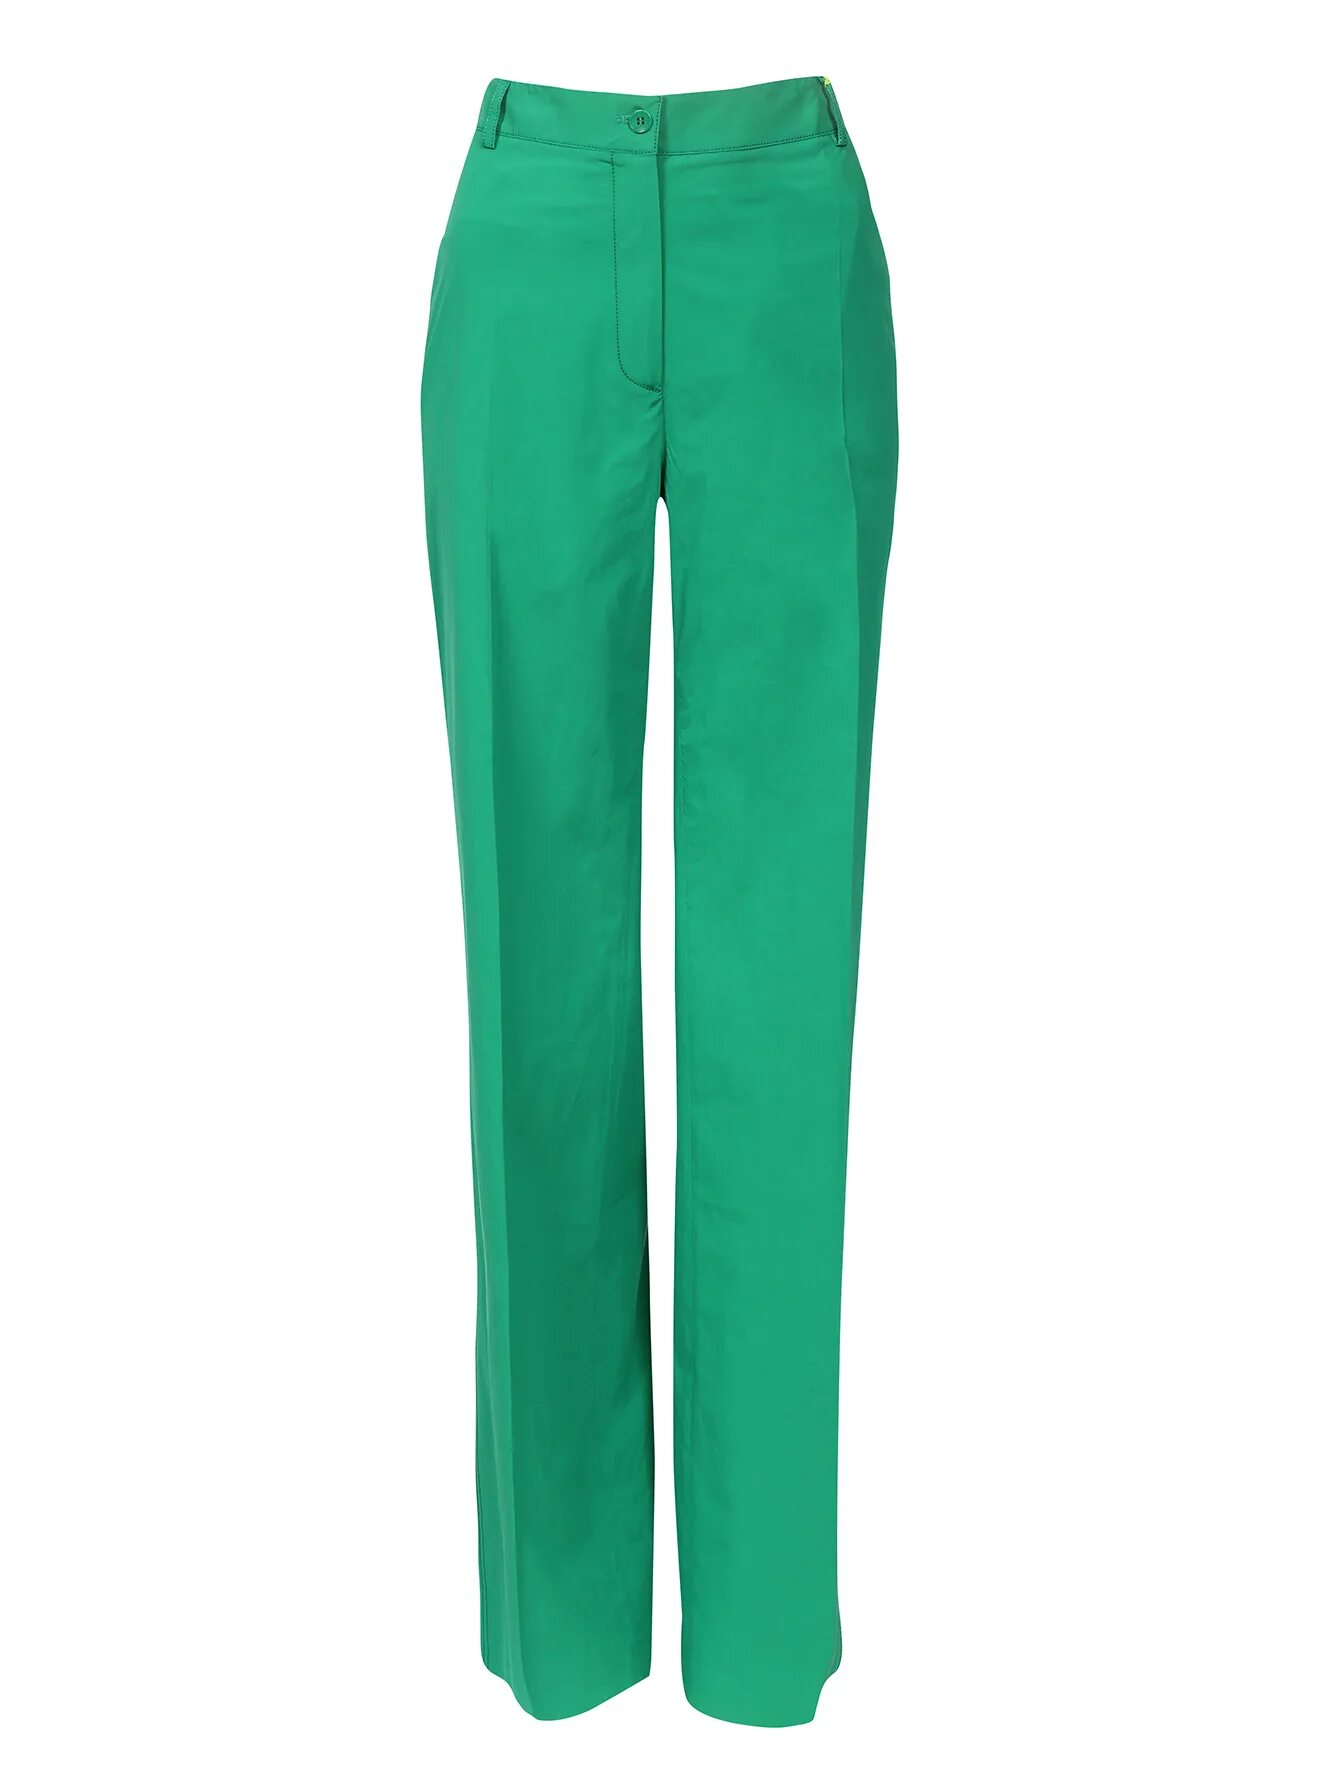 Купить зеленые штаны. Брюки Mango Basics зелёные. Брюки женские Mavi 100316-900 лен 50 зеленый. Брюки Mango Basics изумрудно-зелёные. Брюки палаццо Zara зеленые.